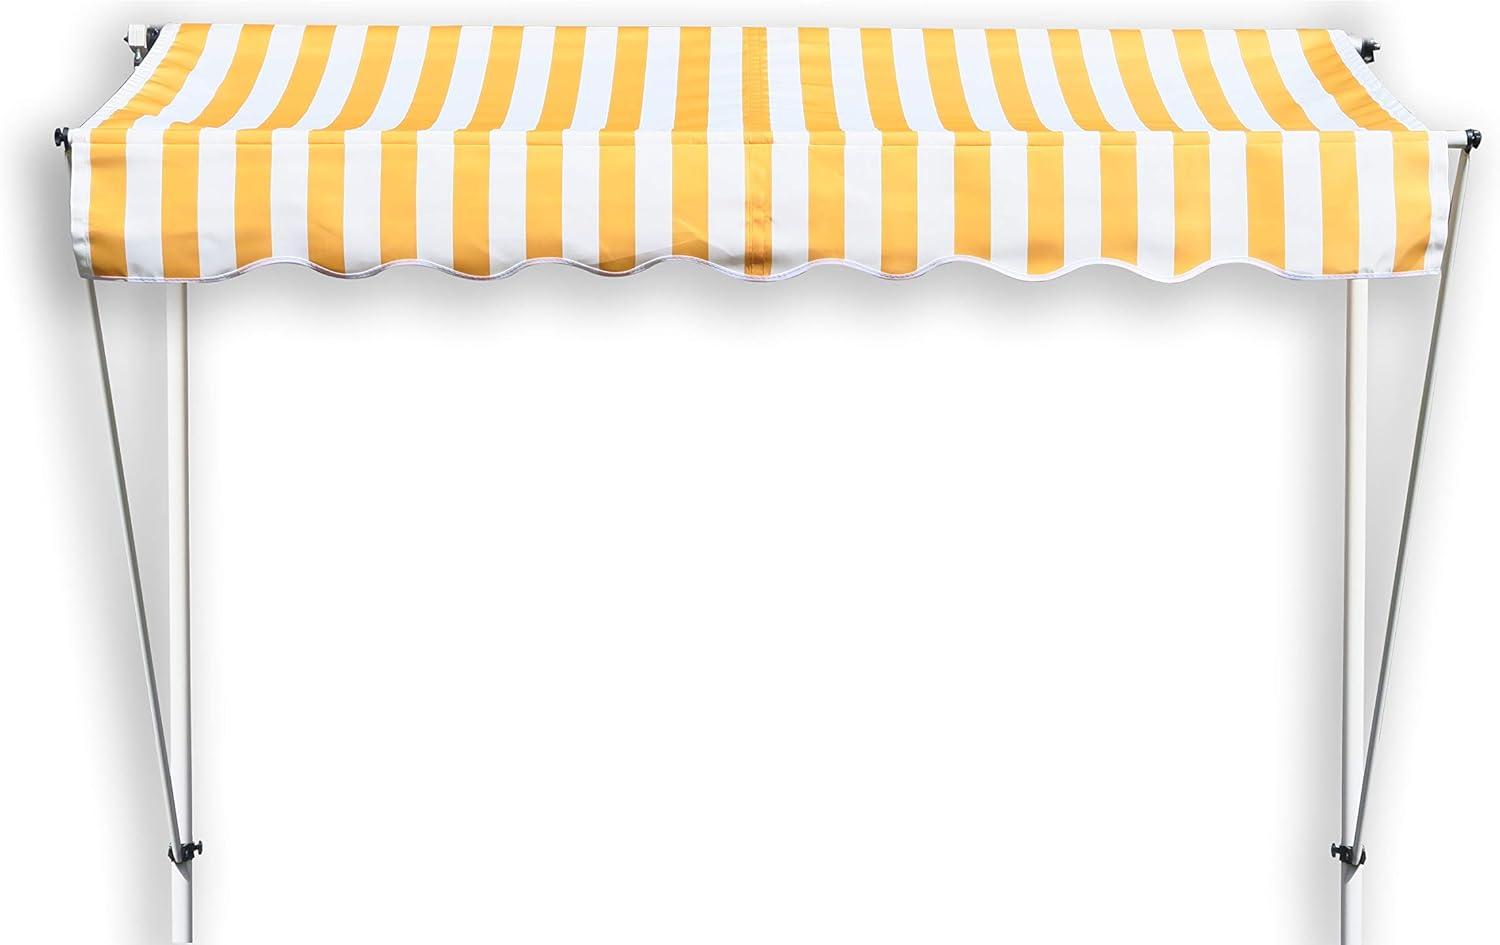 Grasekamp Klemmmarkise Ontario 255x130cm Gelb-Weiß Balkonmarkise höhenverstellbar von 200 cm – 320 cm Bild 1